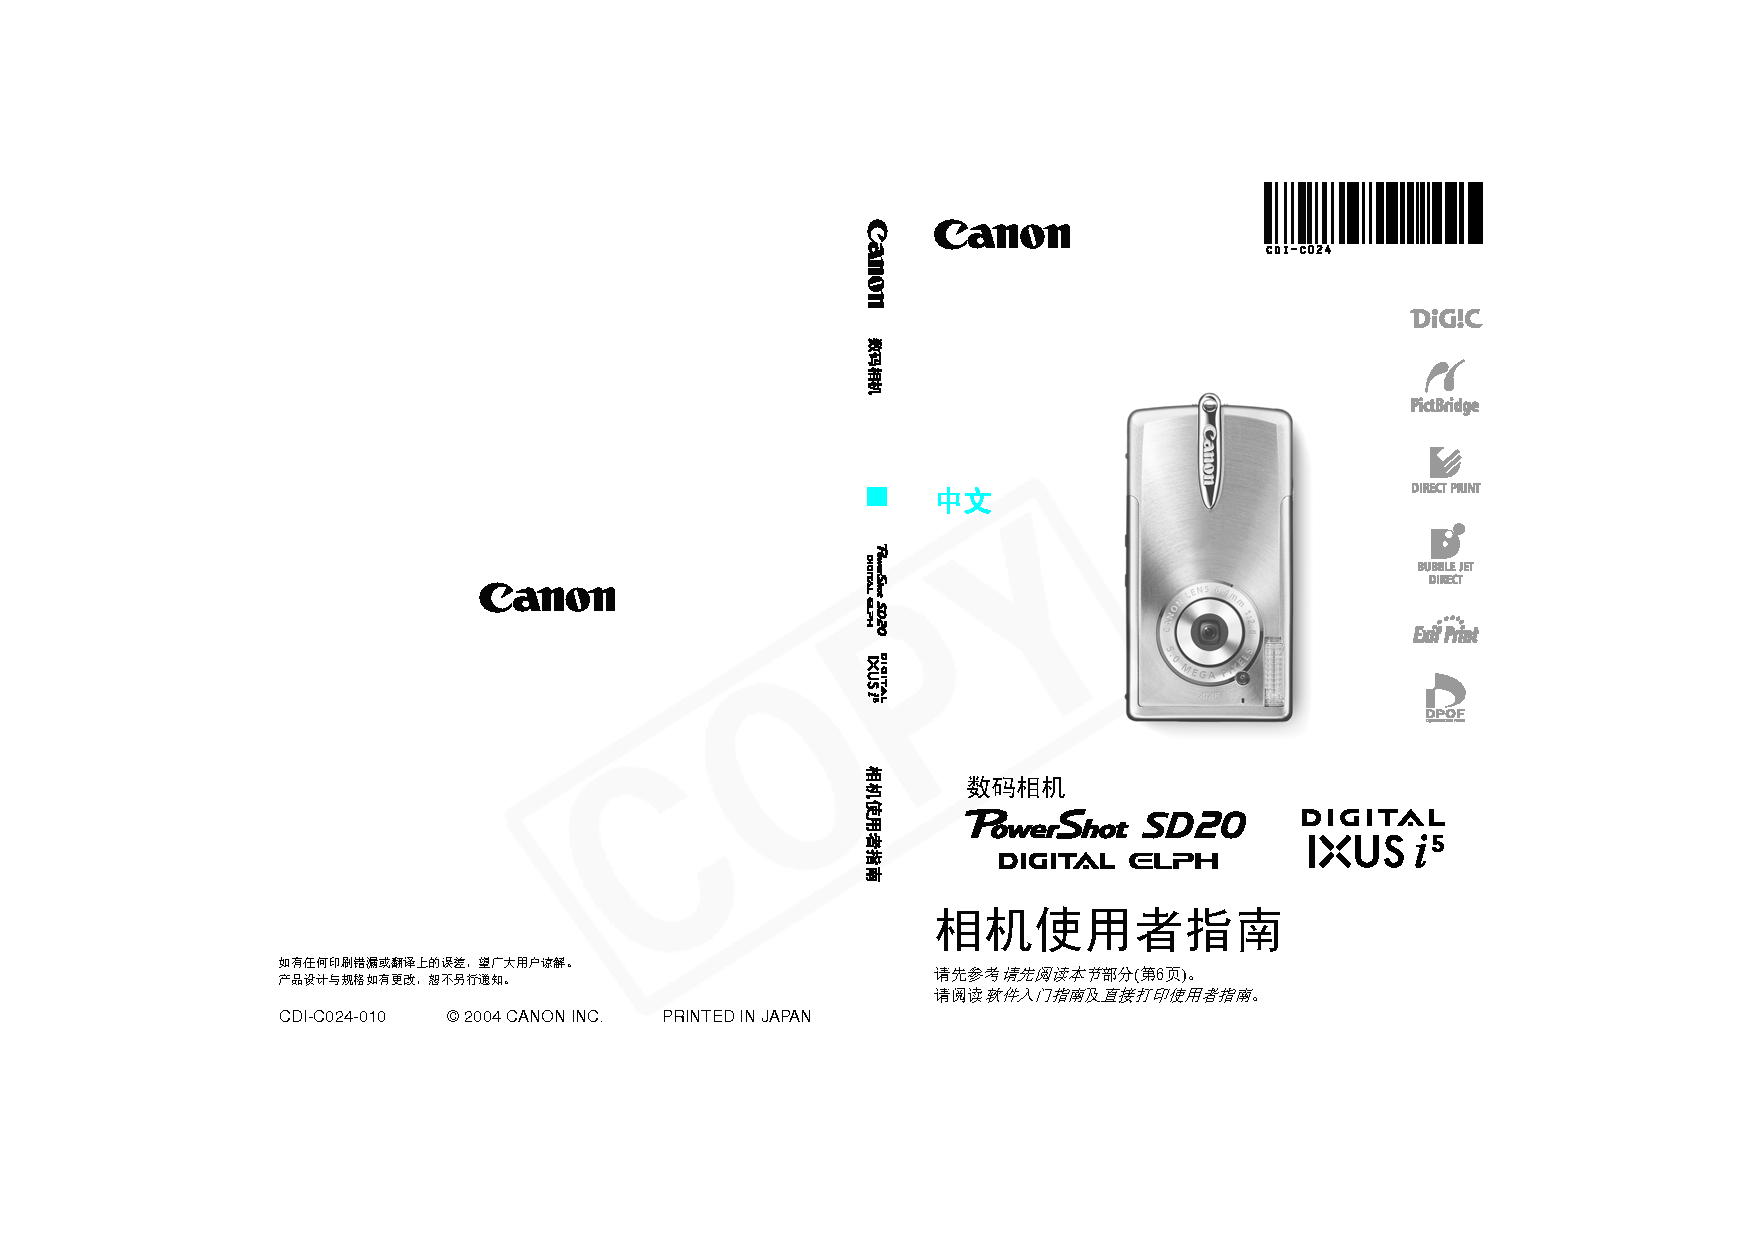 佳能 Canon IXUS i5, PowerShot SD20 用户指南 封面